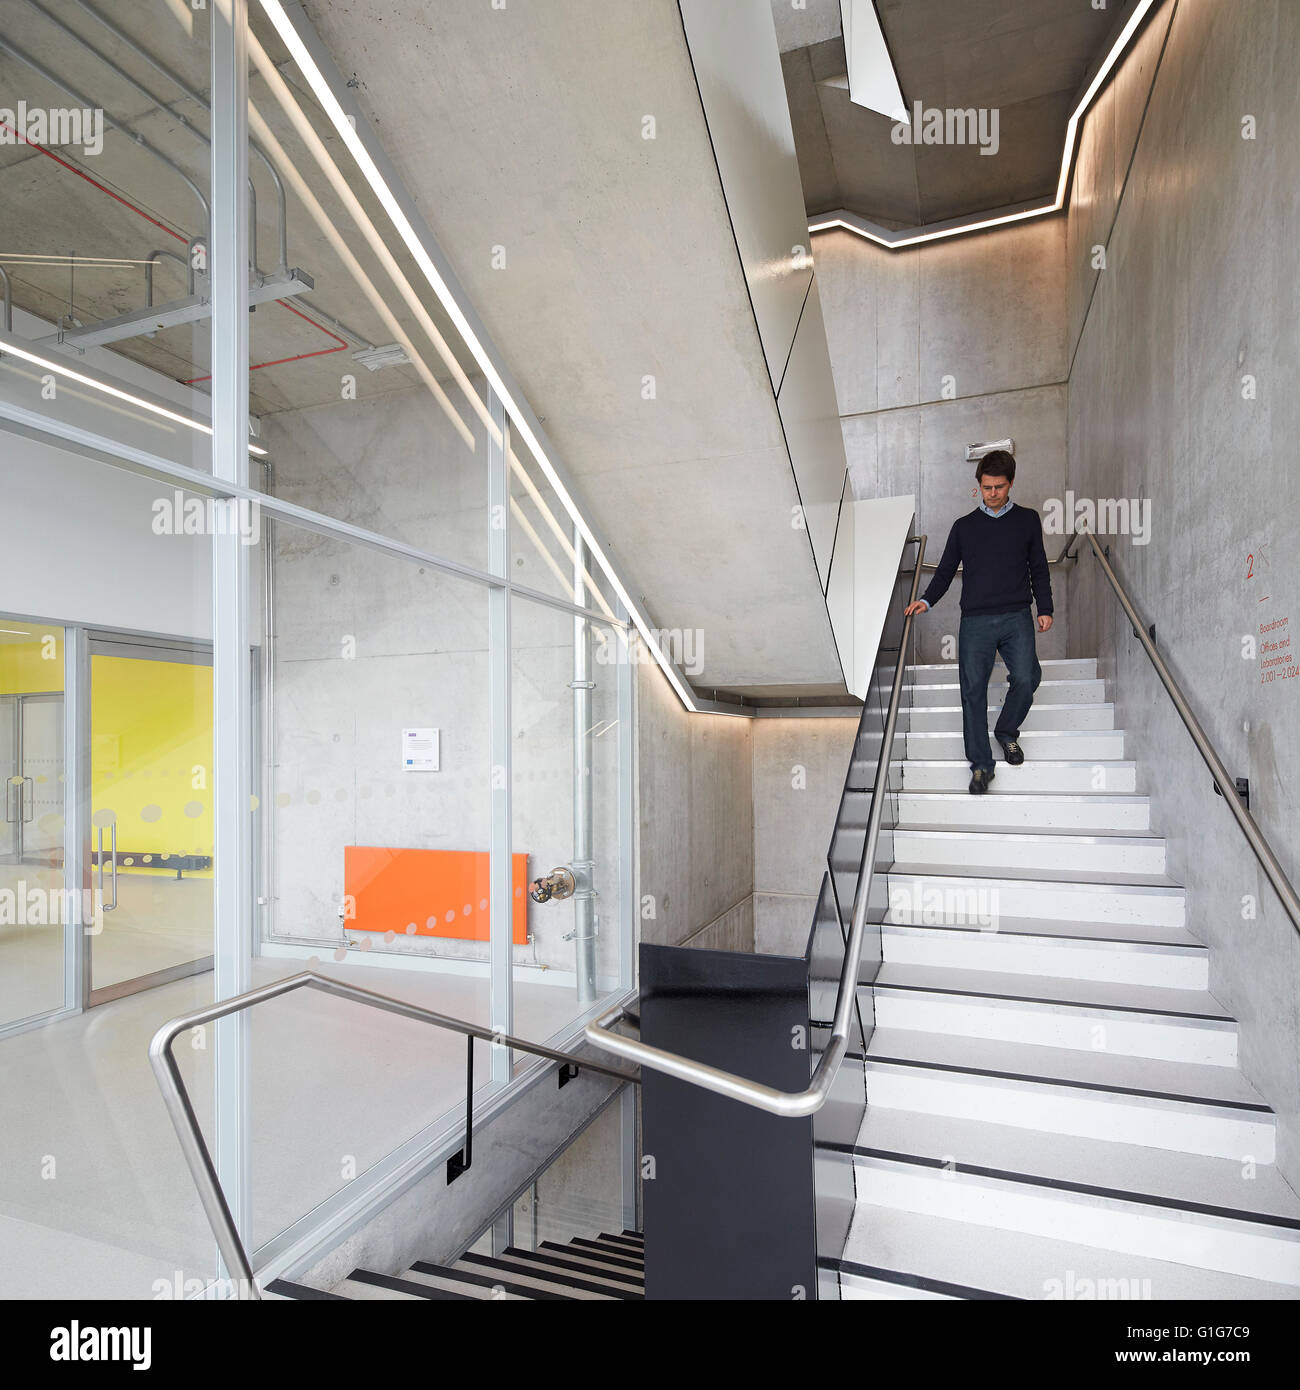 Escalera con figura descendente. El grafeno Institute de la Universidad de Manchester, Manchester, Reino Unido. Arquitecto: Jestico + Whiles, 2015. Foto de stock